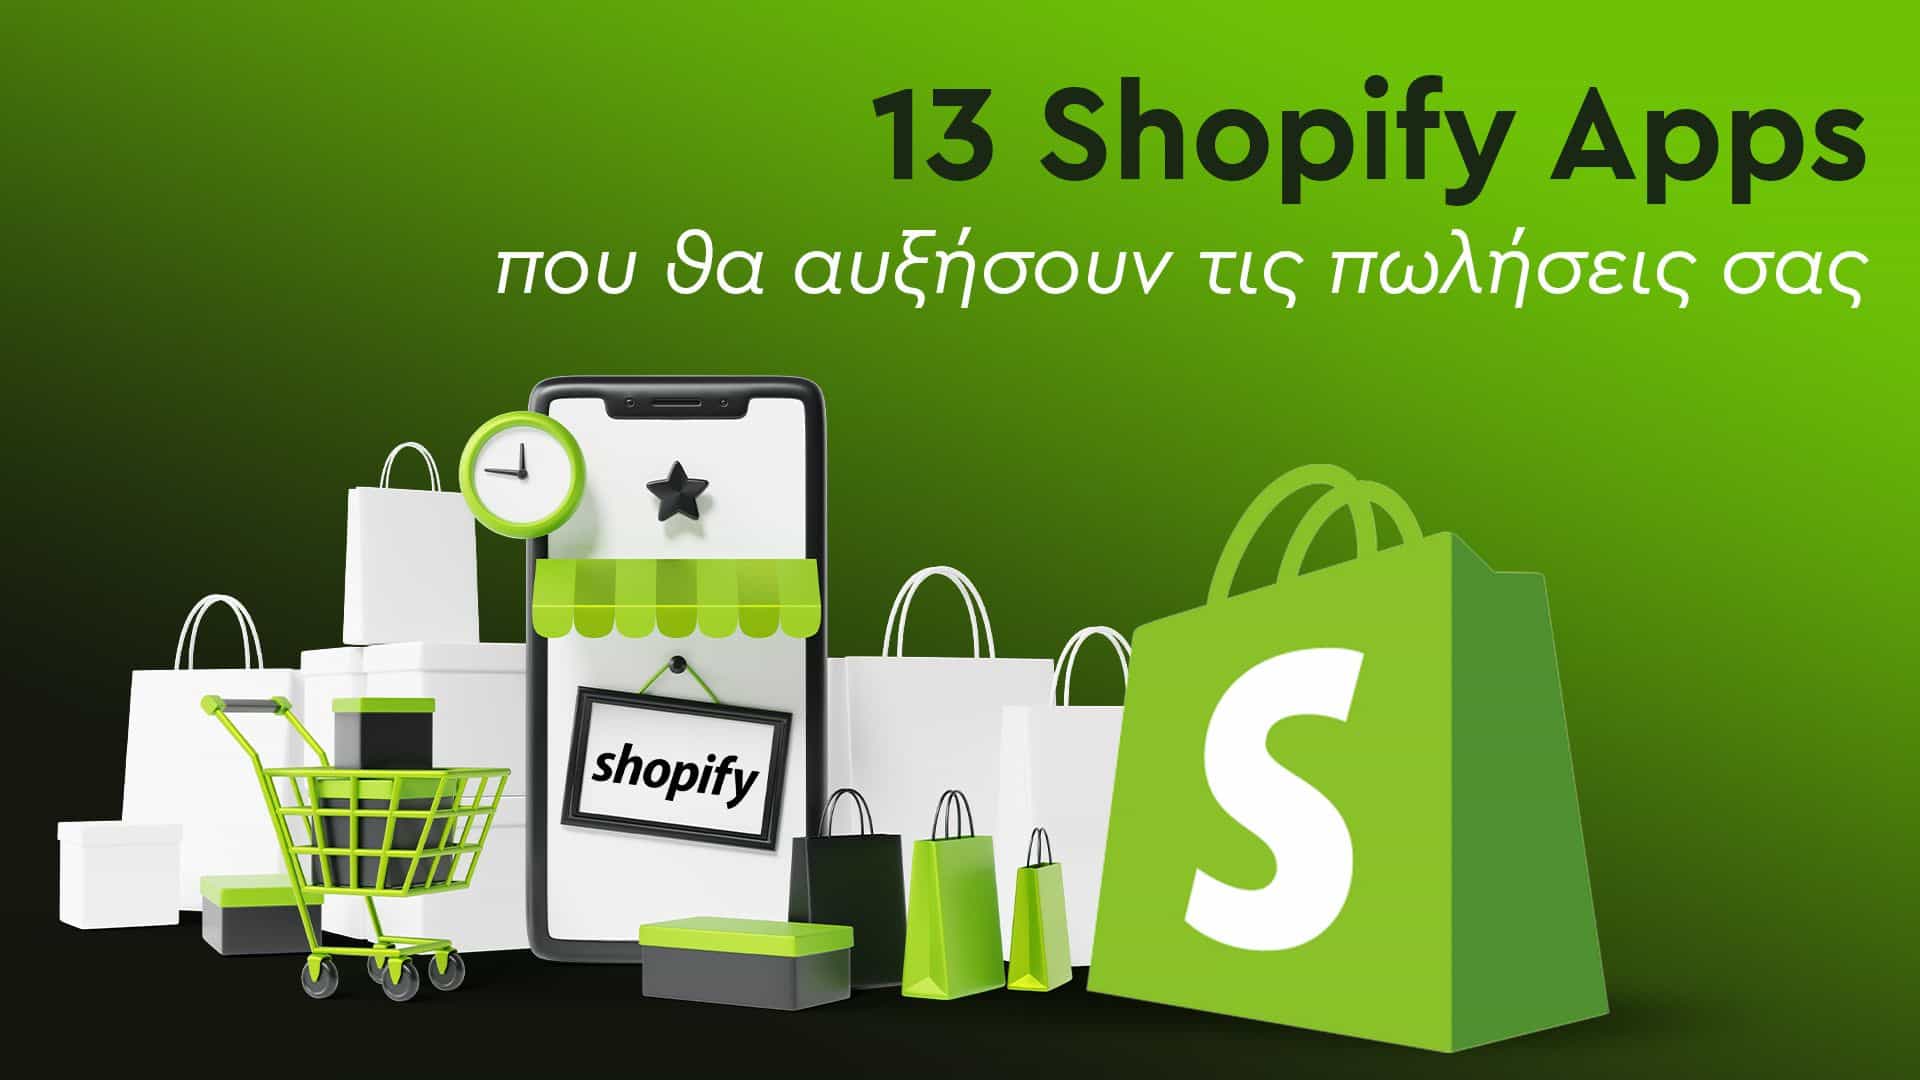 Τα 13 Shopify Apps που χρειάζεστε για να